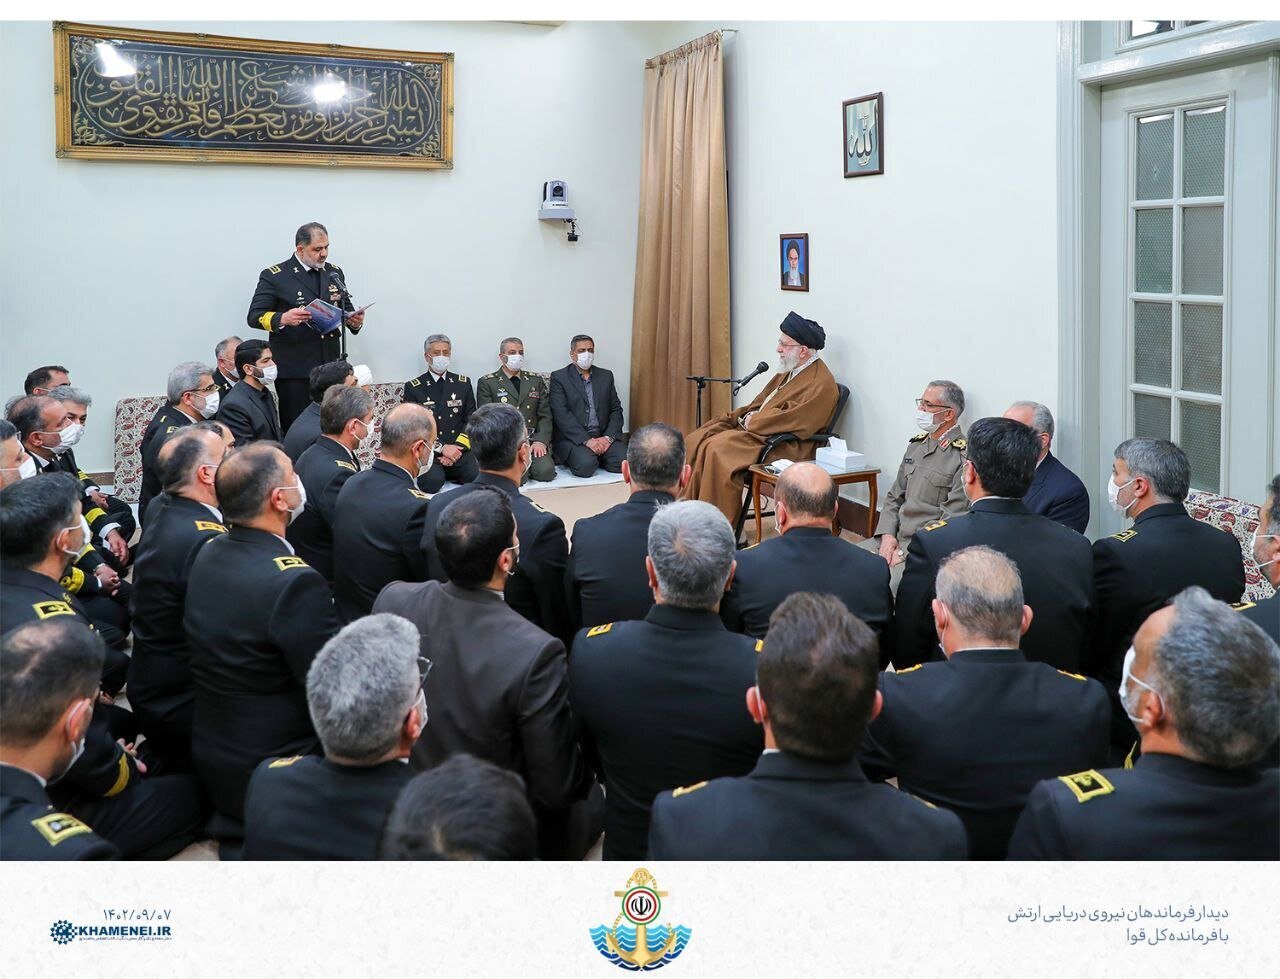 دیدار جمعی از فرماندهان و مسئولان نیروی دریایی با رهبر انقلاب/ عکس